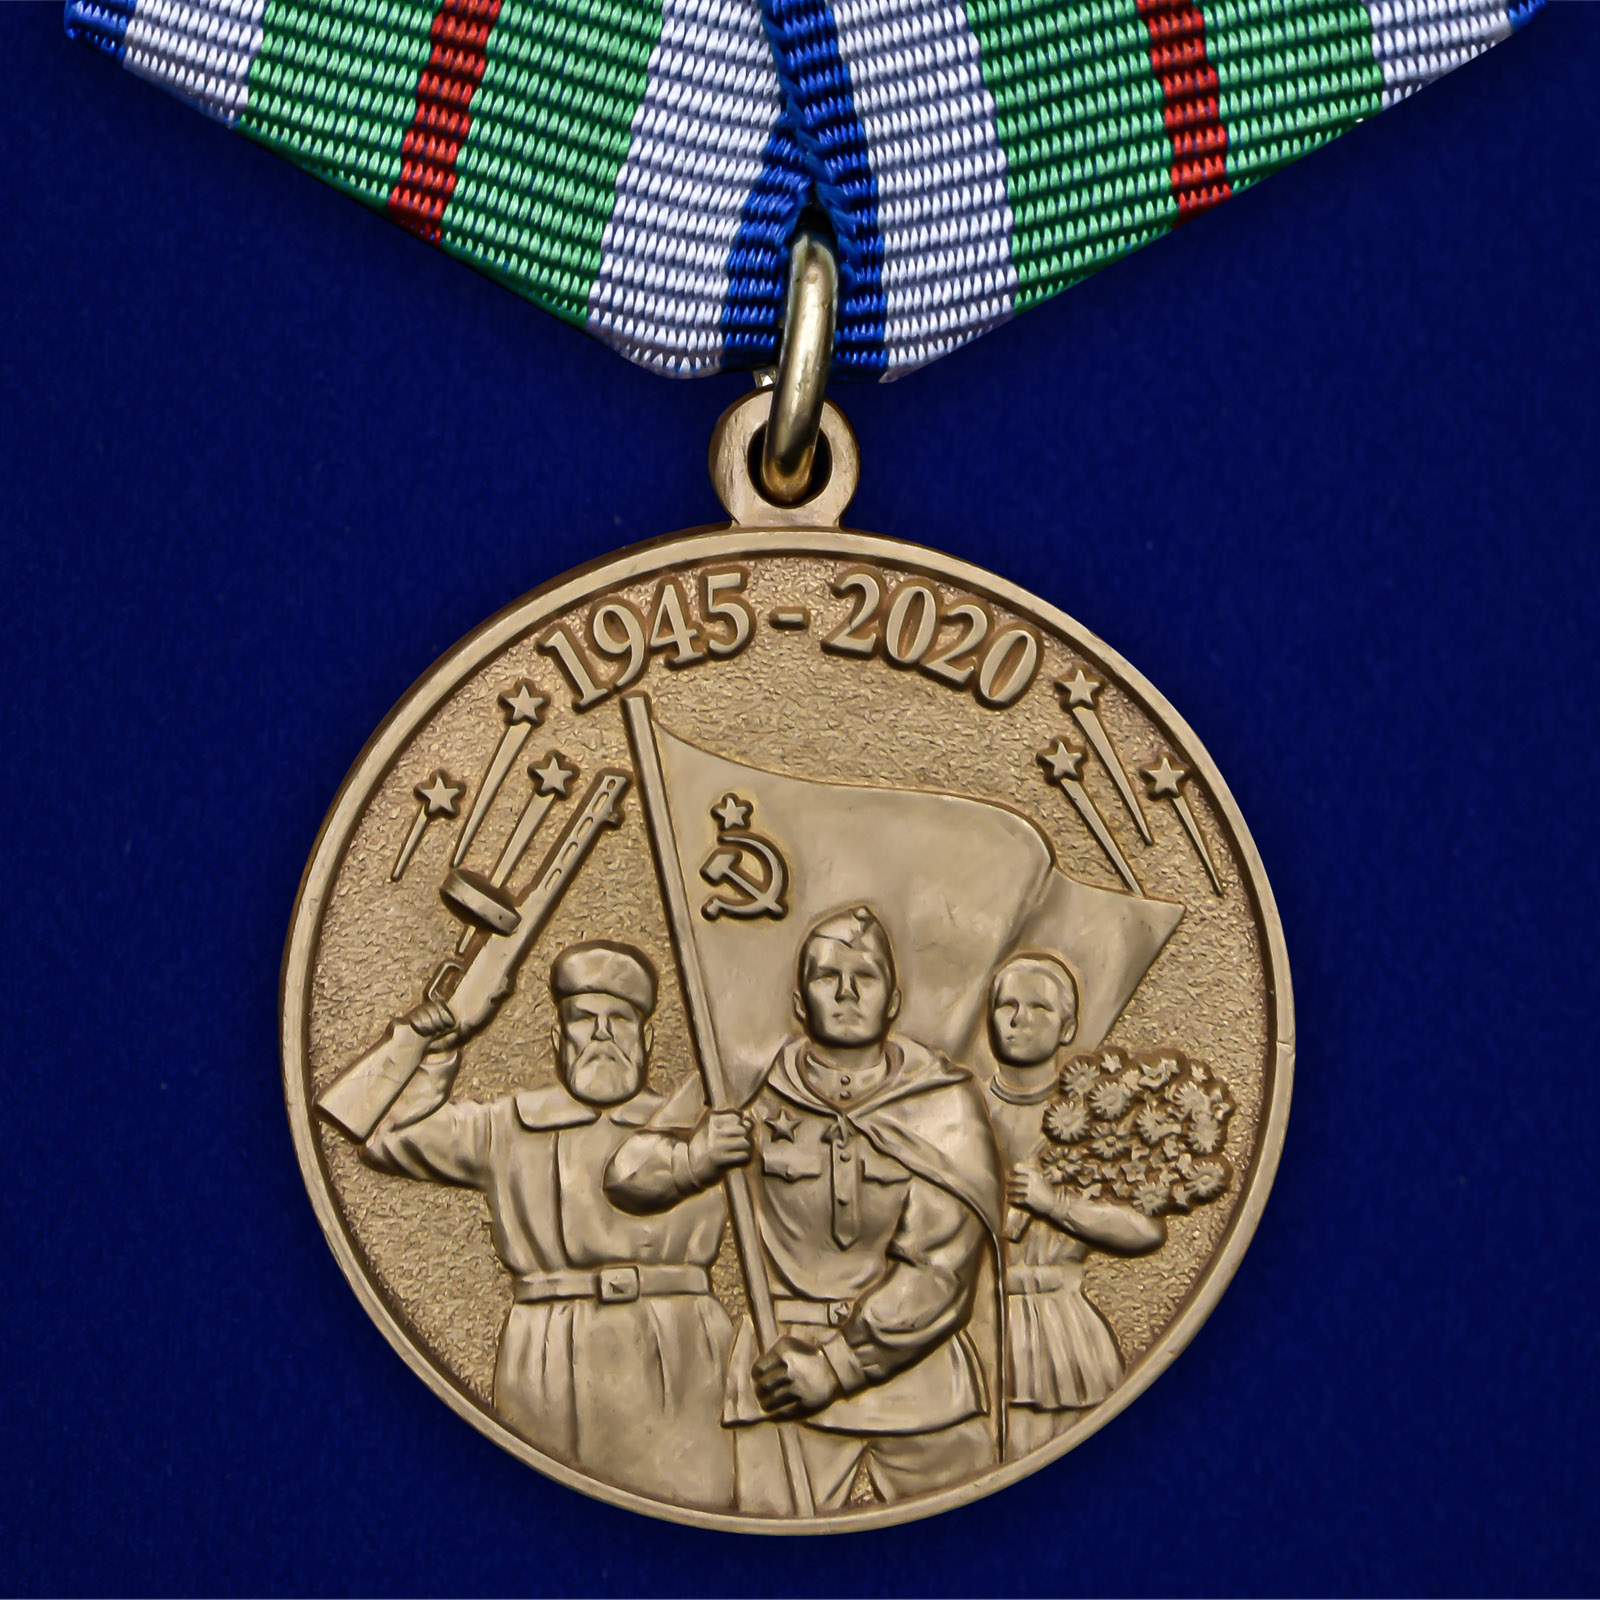 Купить медаль 75 лет Победы в Великой Отечественной войне 1941-1945 годов Беларусь на подставке выгодно